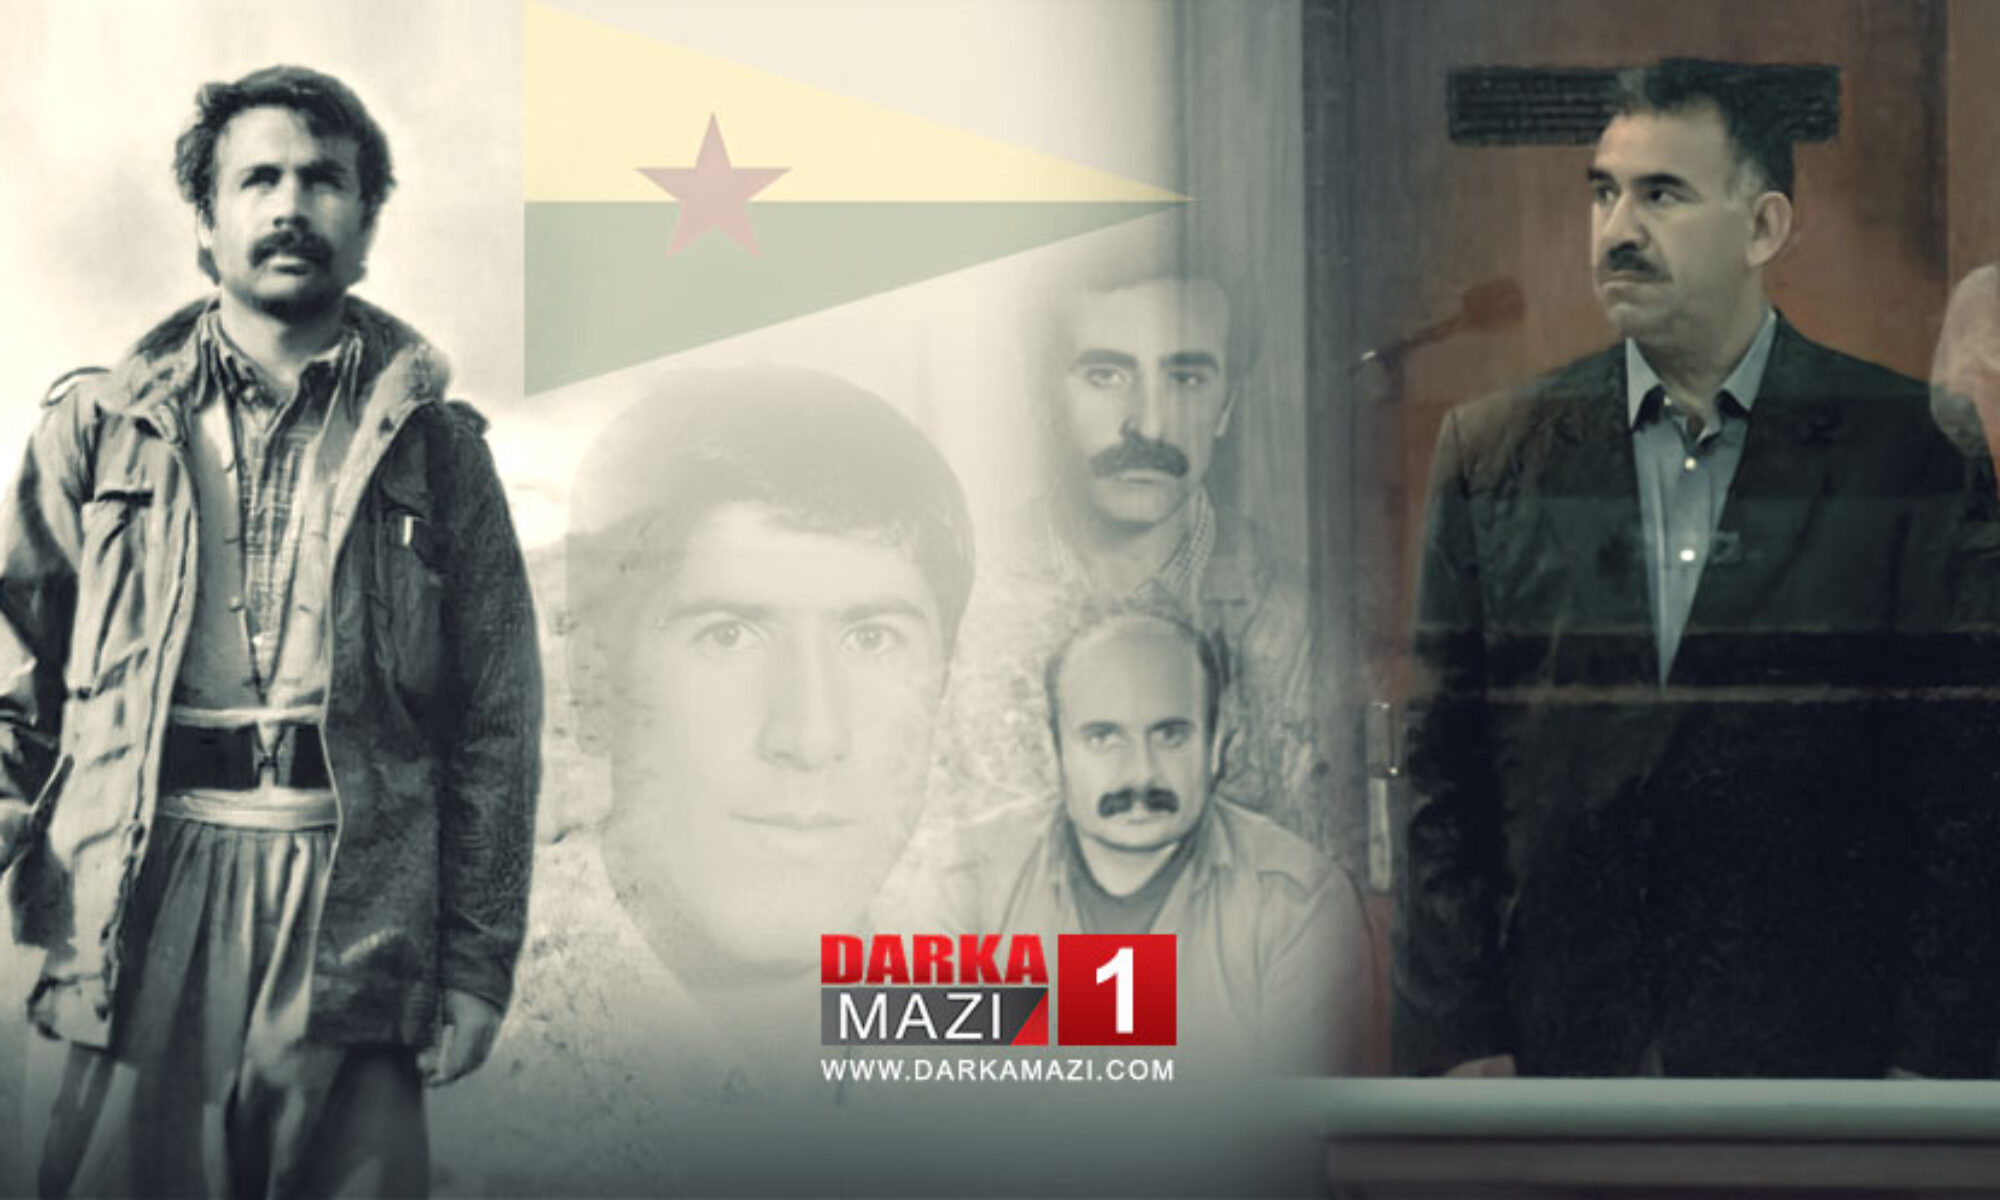 15 Ağustos çizgisinden 15 Şubat çizgisine değin; PKK’de silah ve şiddet HRK, ARGK, PYD, YPG; YPJ; İmralı, Atilla Uğur